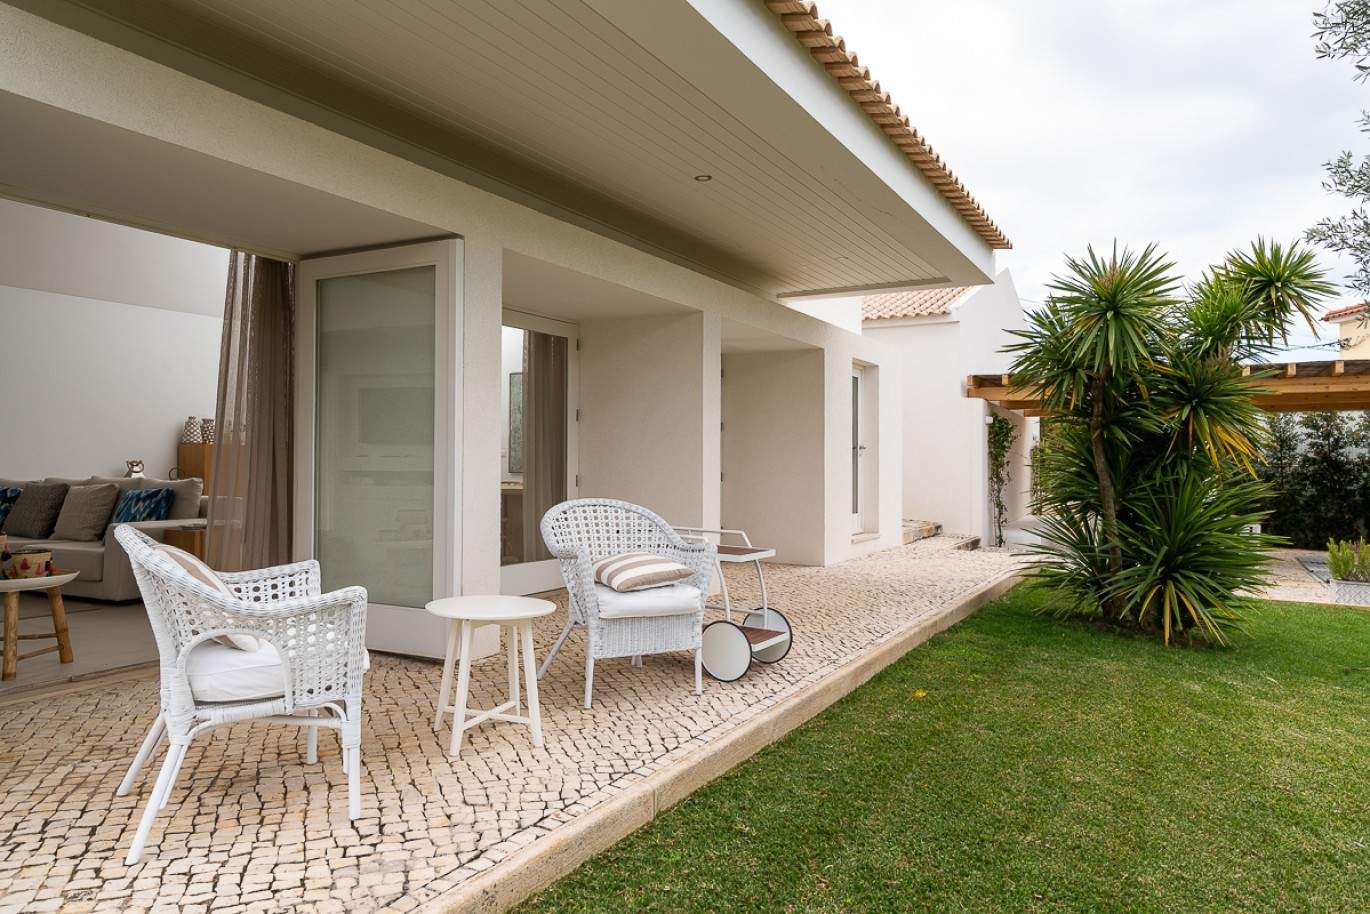 Venda de moradia de alto padrão com piscina, Silves, Algarve, Portugal_77338